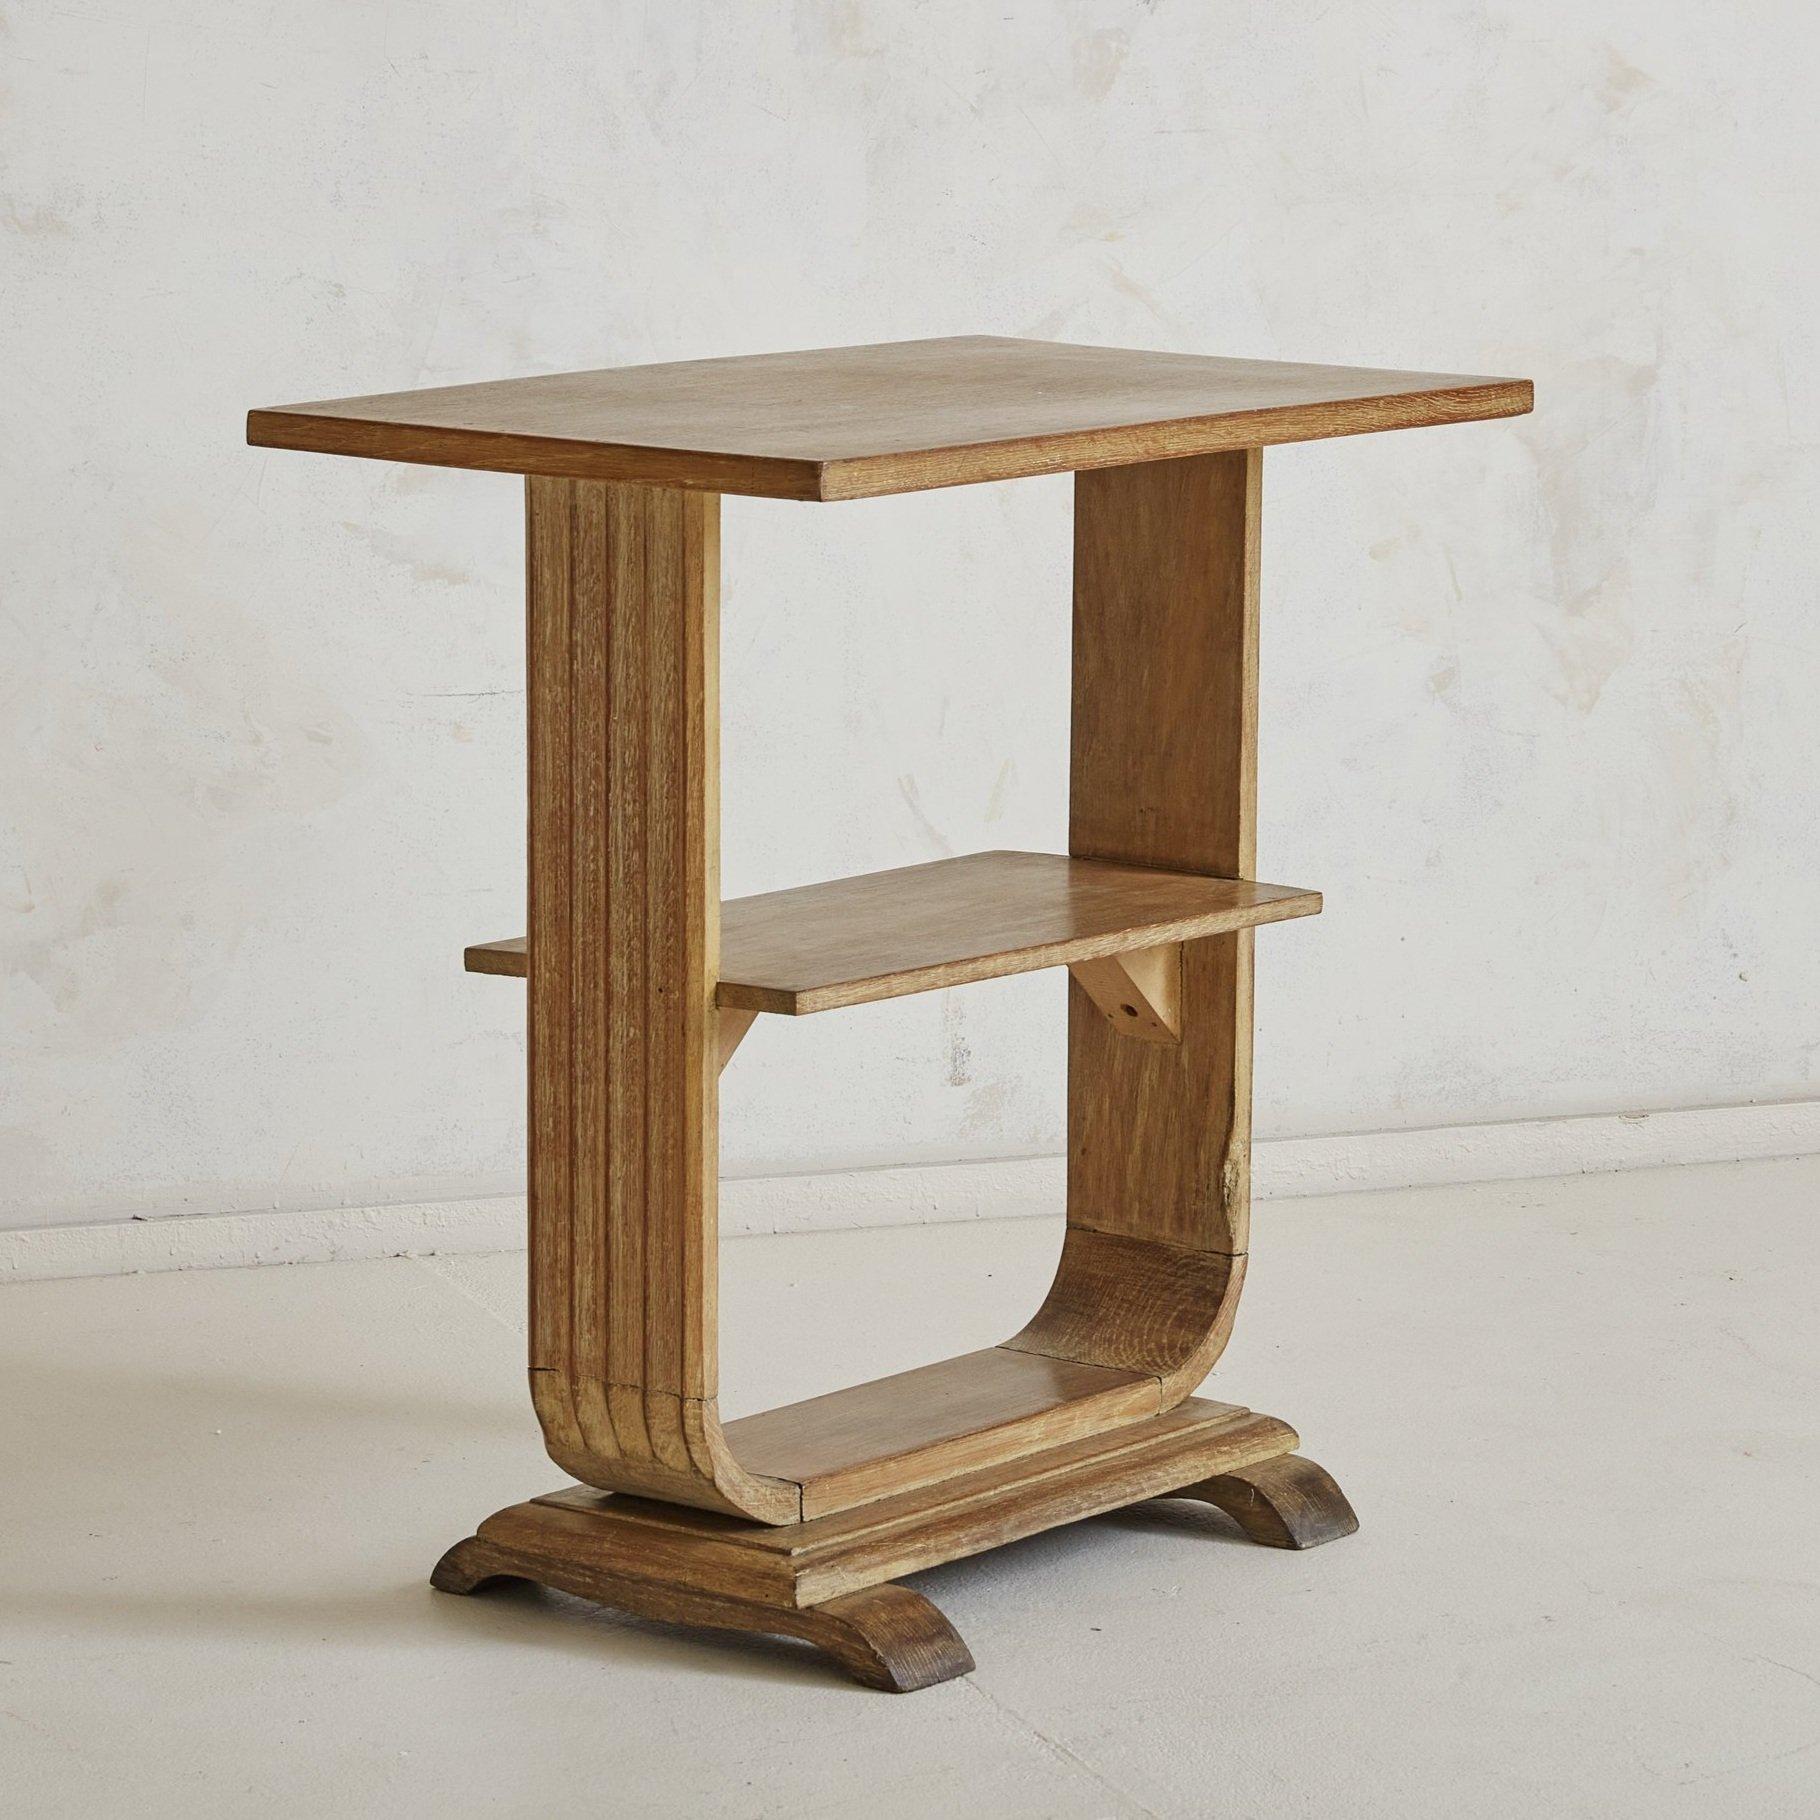 Petite table d'appoint en bois de style Art déco français des années 1940. Cette table d'appoint comporte trois étagères rectangulaires, un cadre tulipe en forme de 